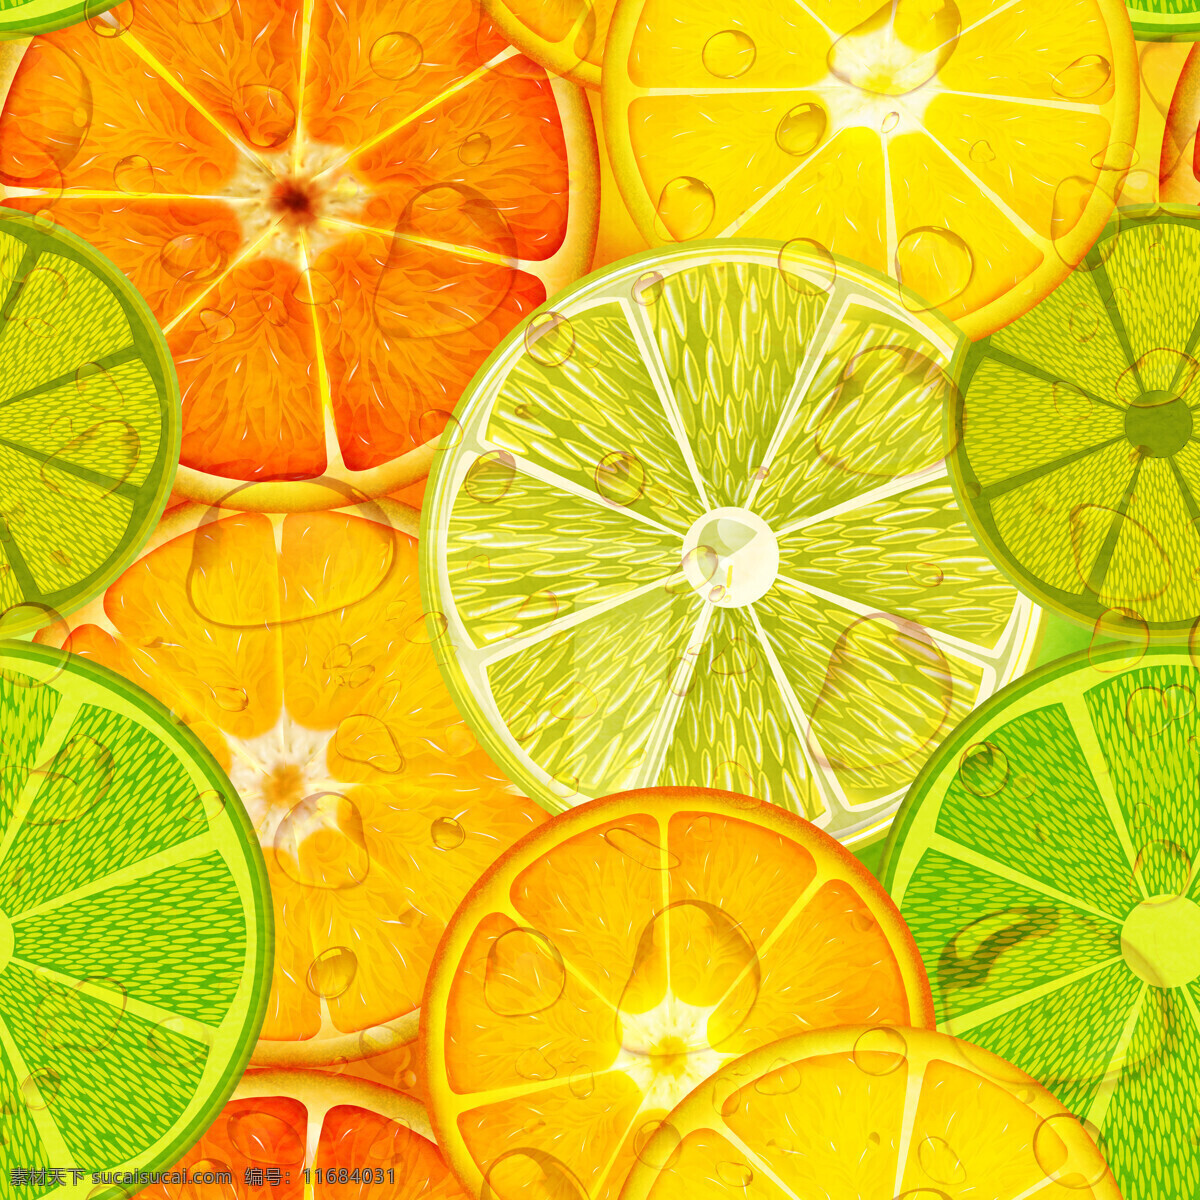 柠檬 橘子 水果 拼图 圆形 设计素材 背景素材 高清图片 背景底纹 背景贴图素材 底纹边框